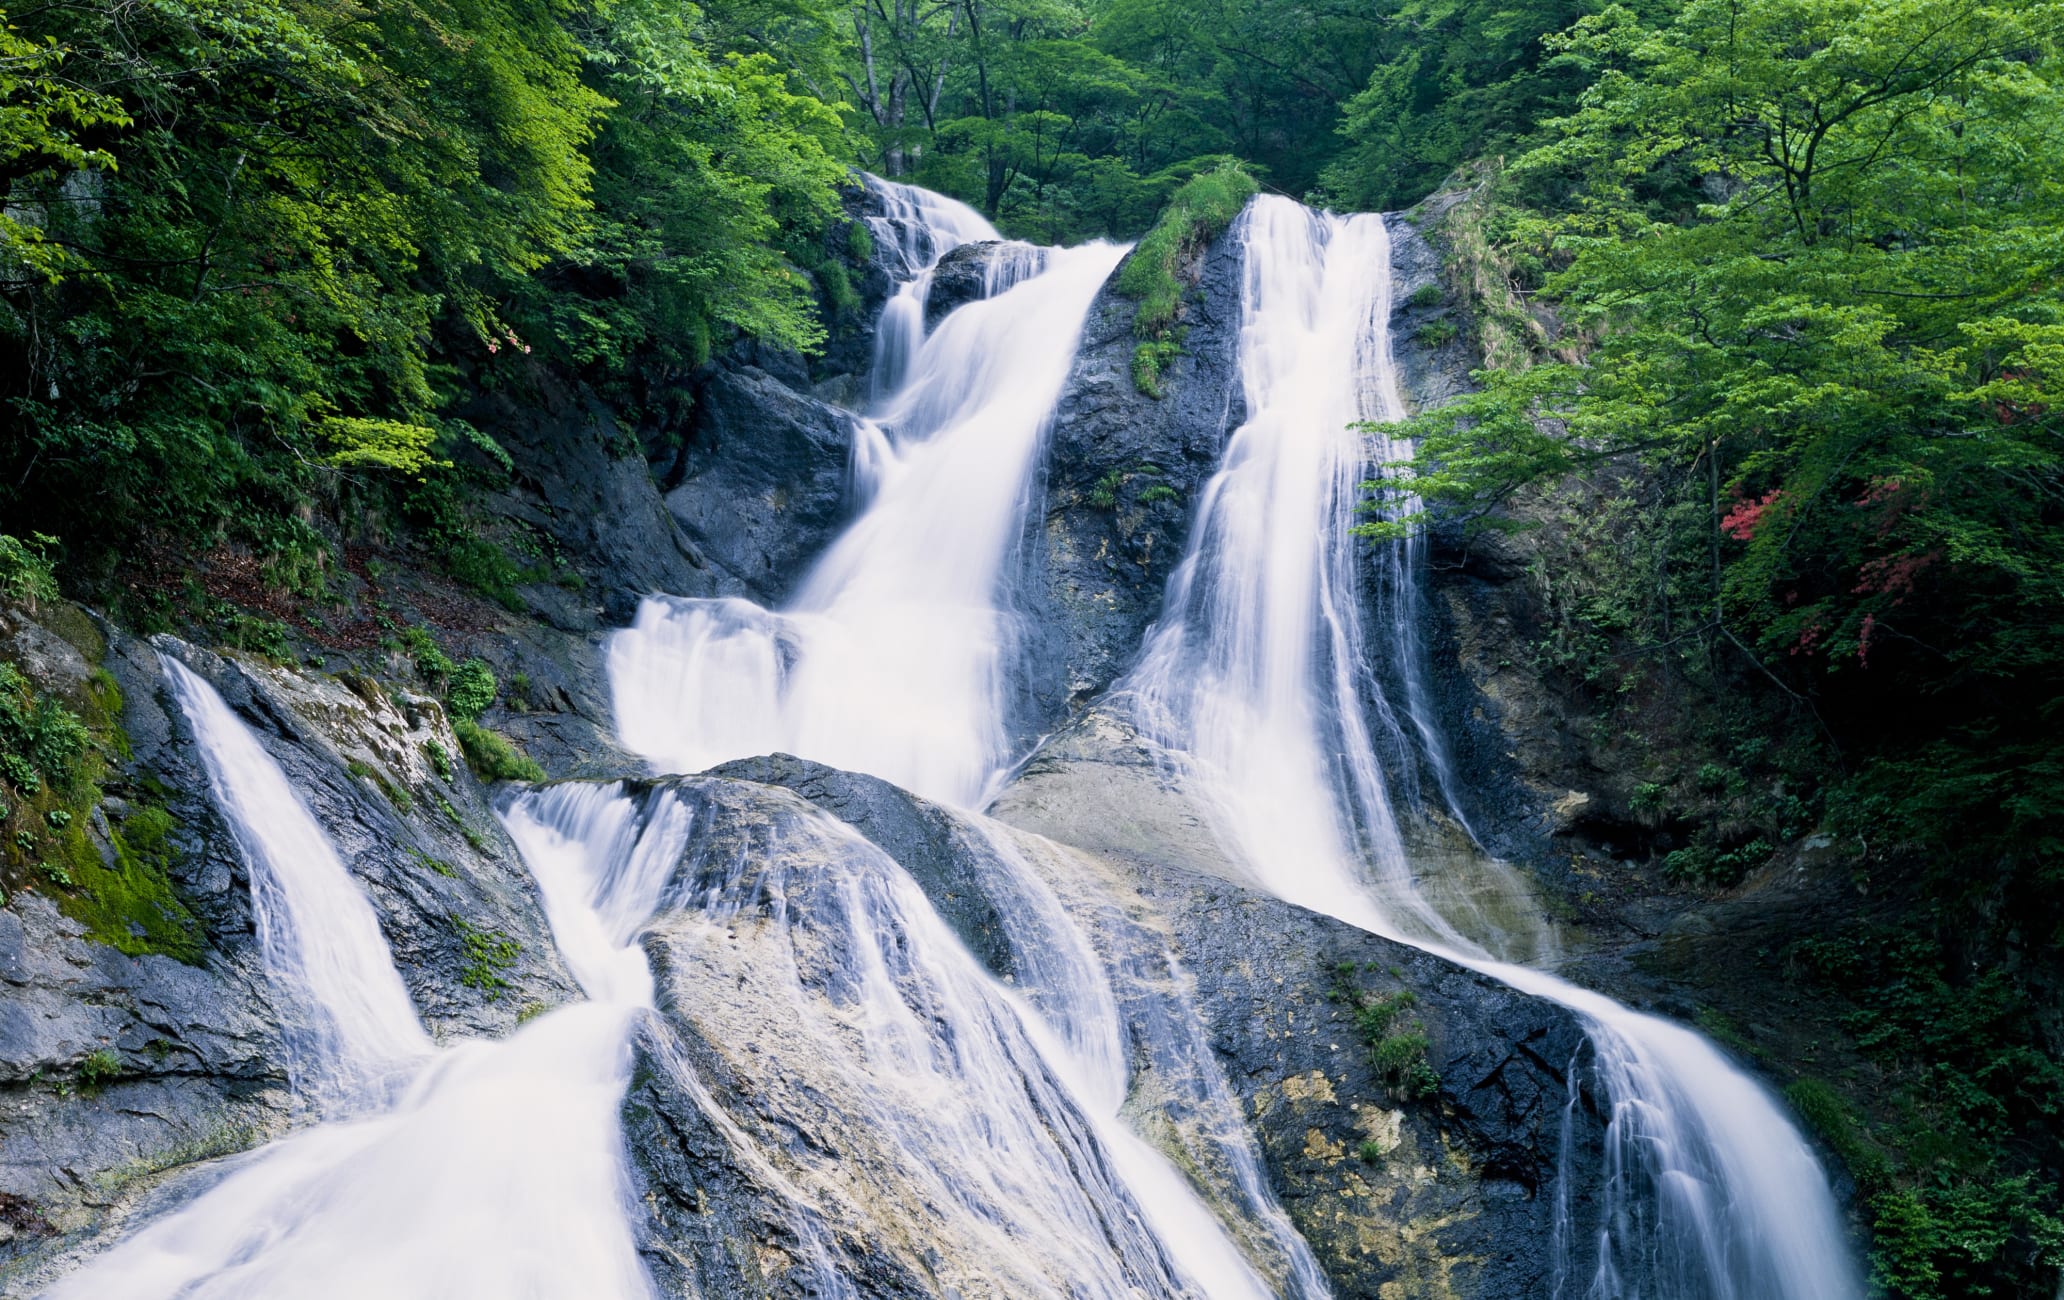 Kirifuri-no-taki Falls